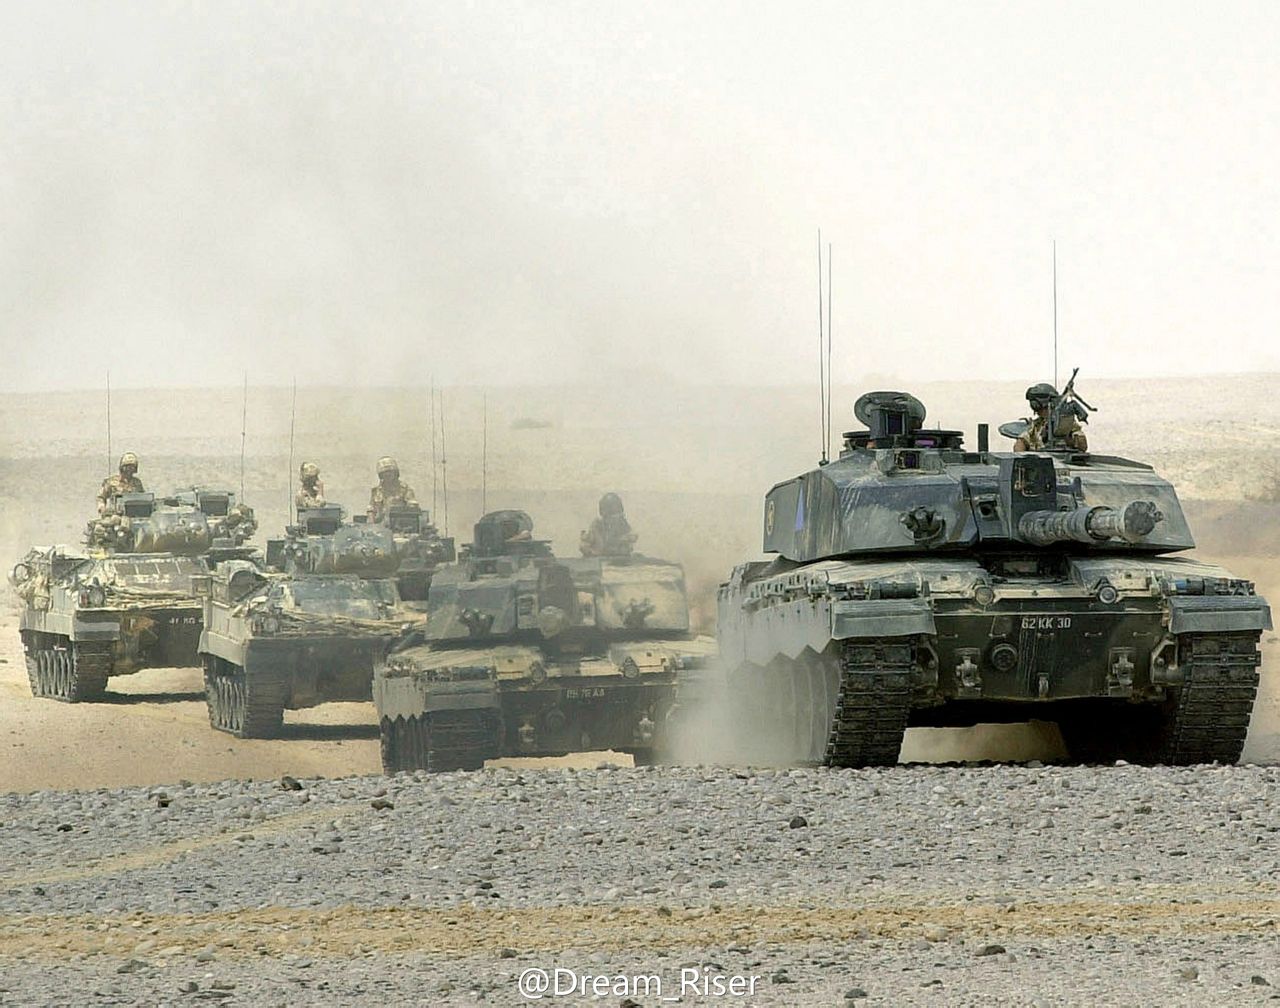 在伊拉克的挑戰者坦克部隊